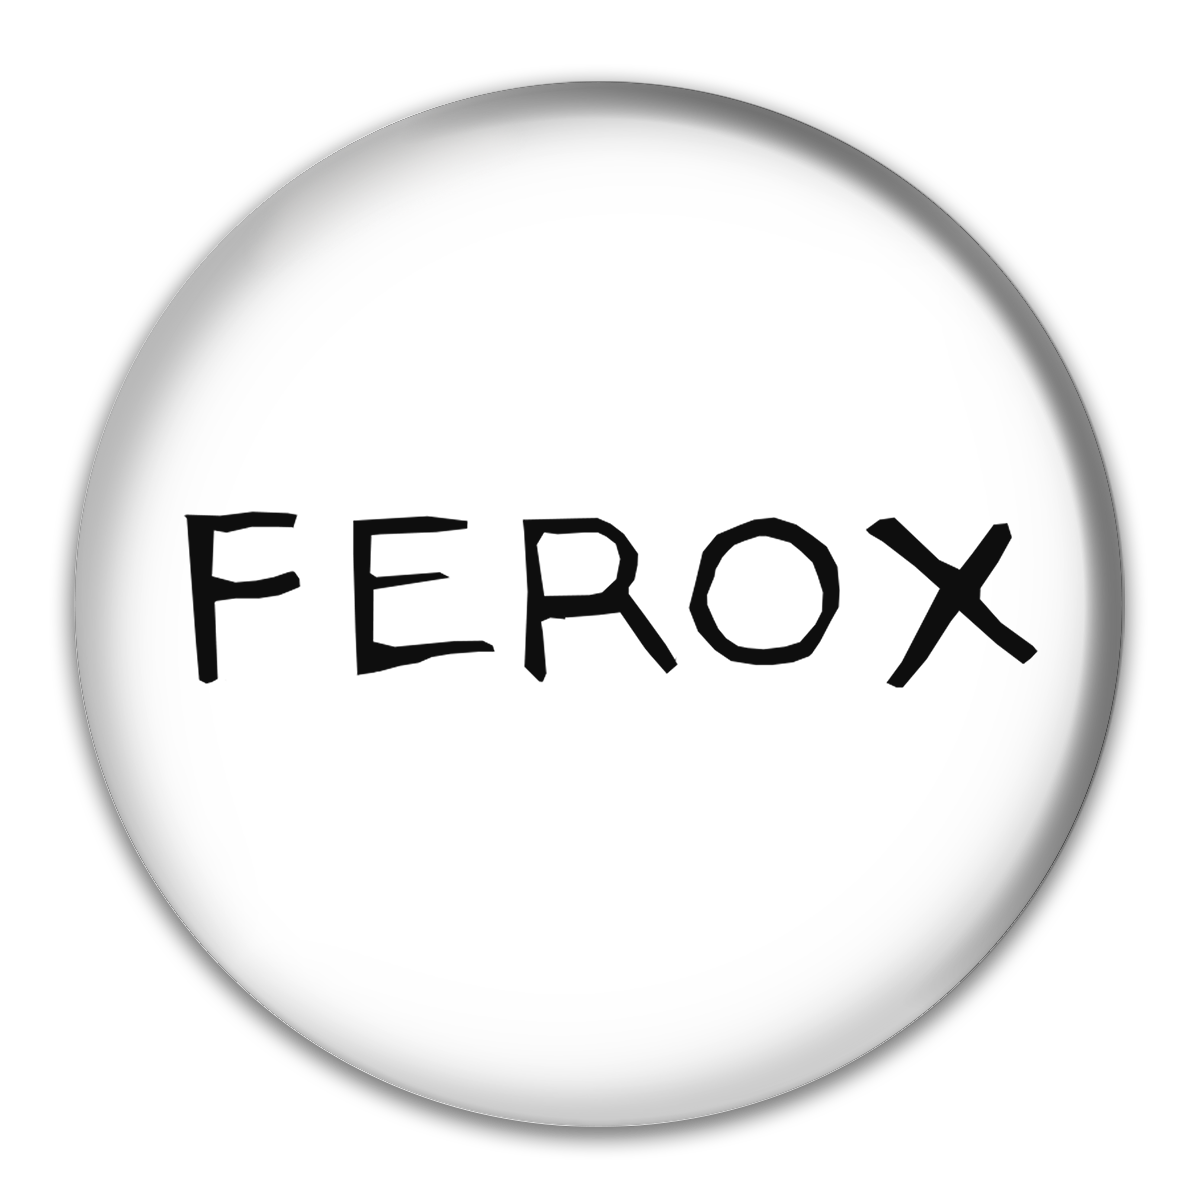 Ferox Tat Button